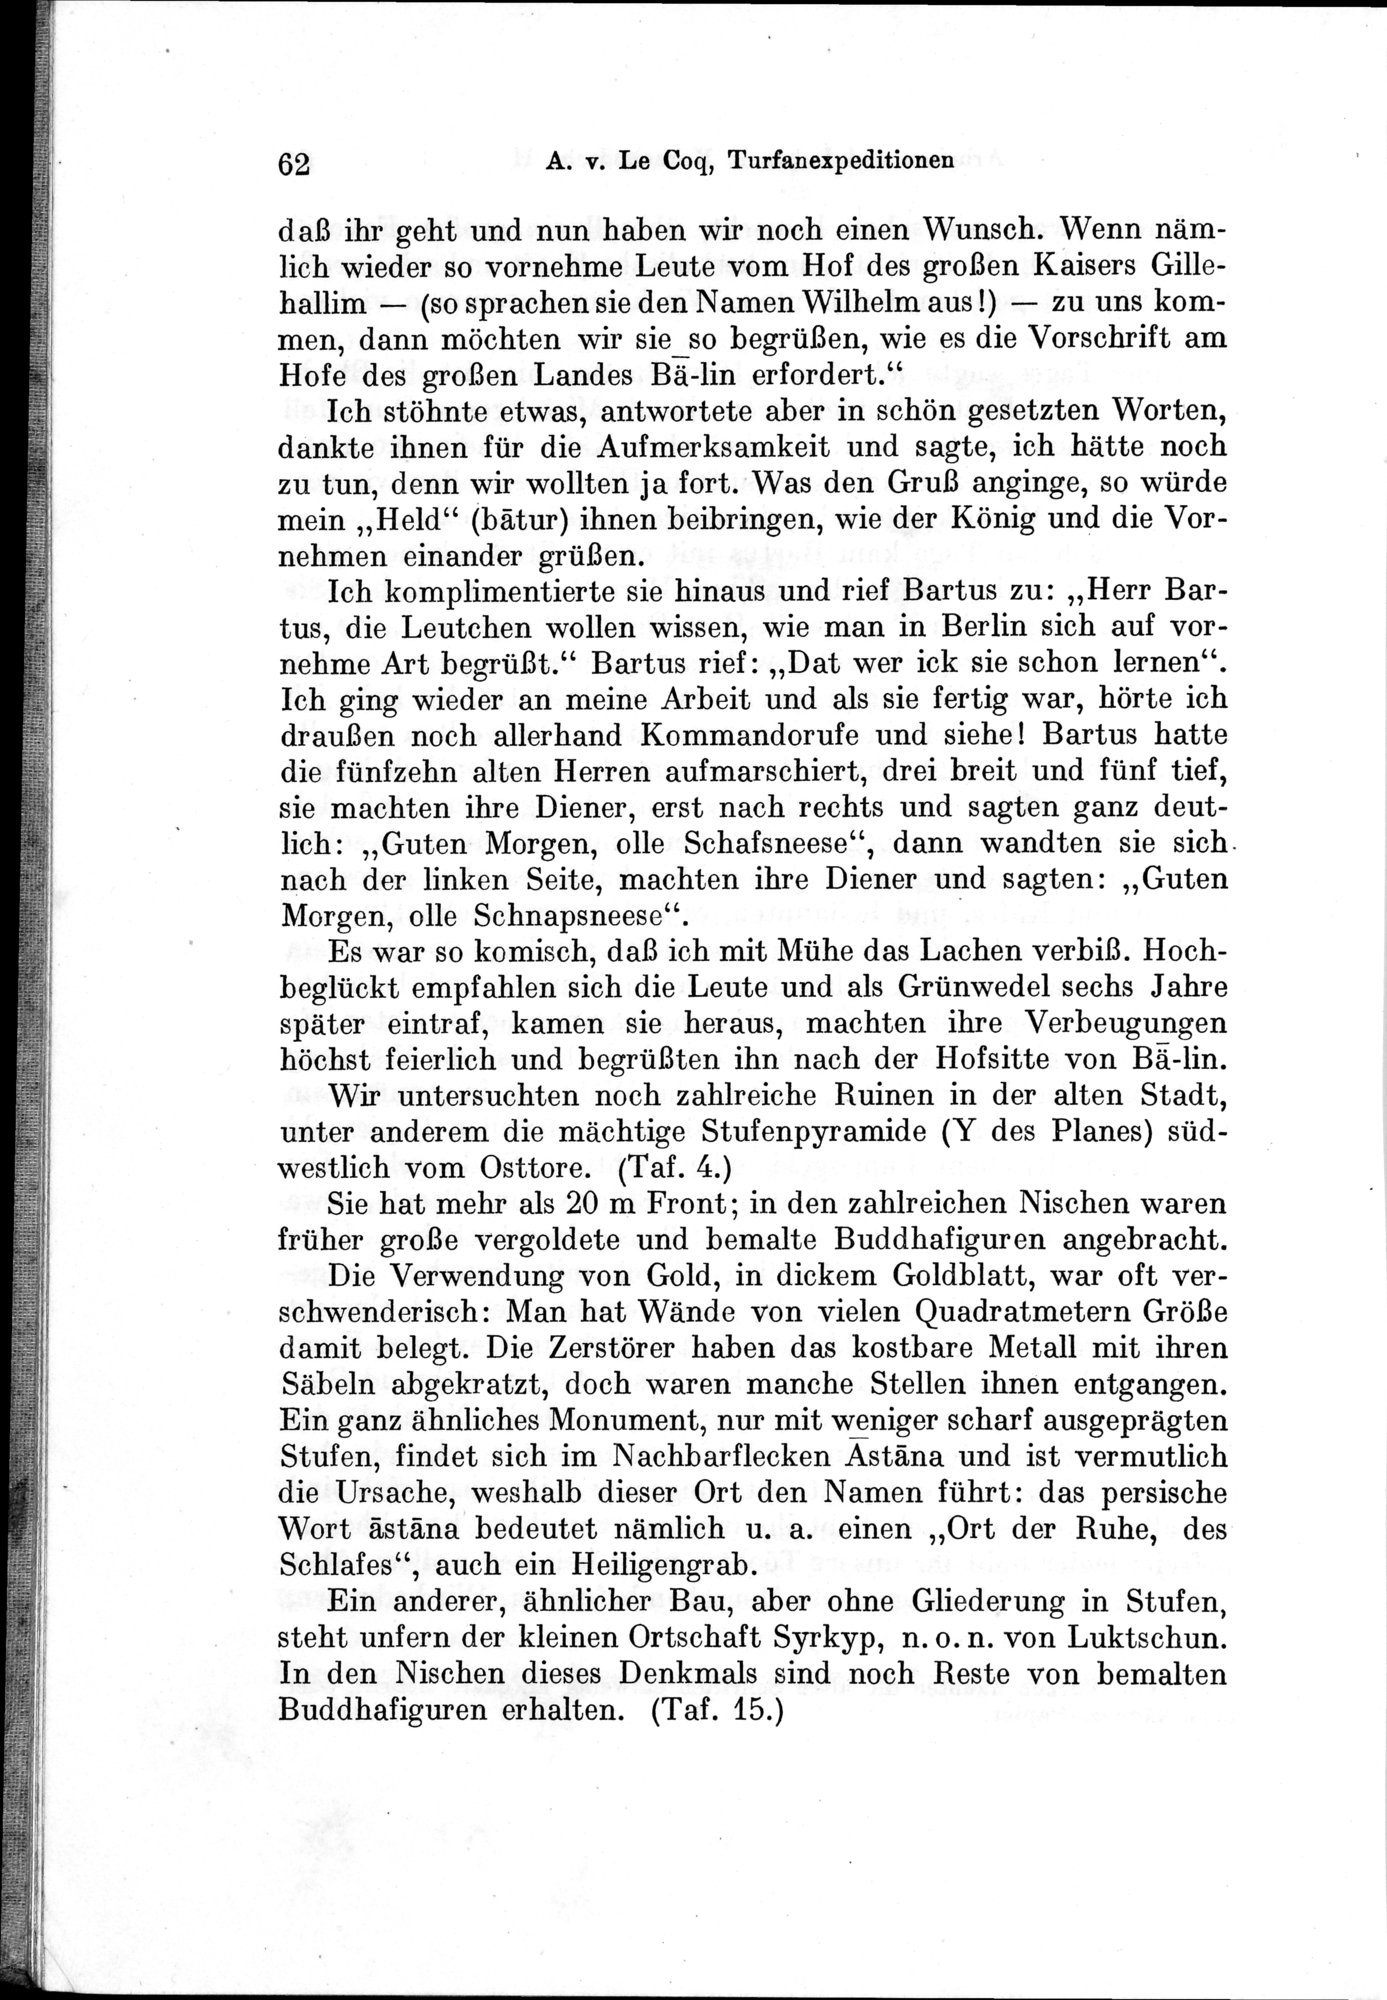 Auf Hellas Spuren in Ostturkistan : vol.1 / Page 94 (Grayscale High Resolution Image)